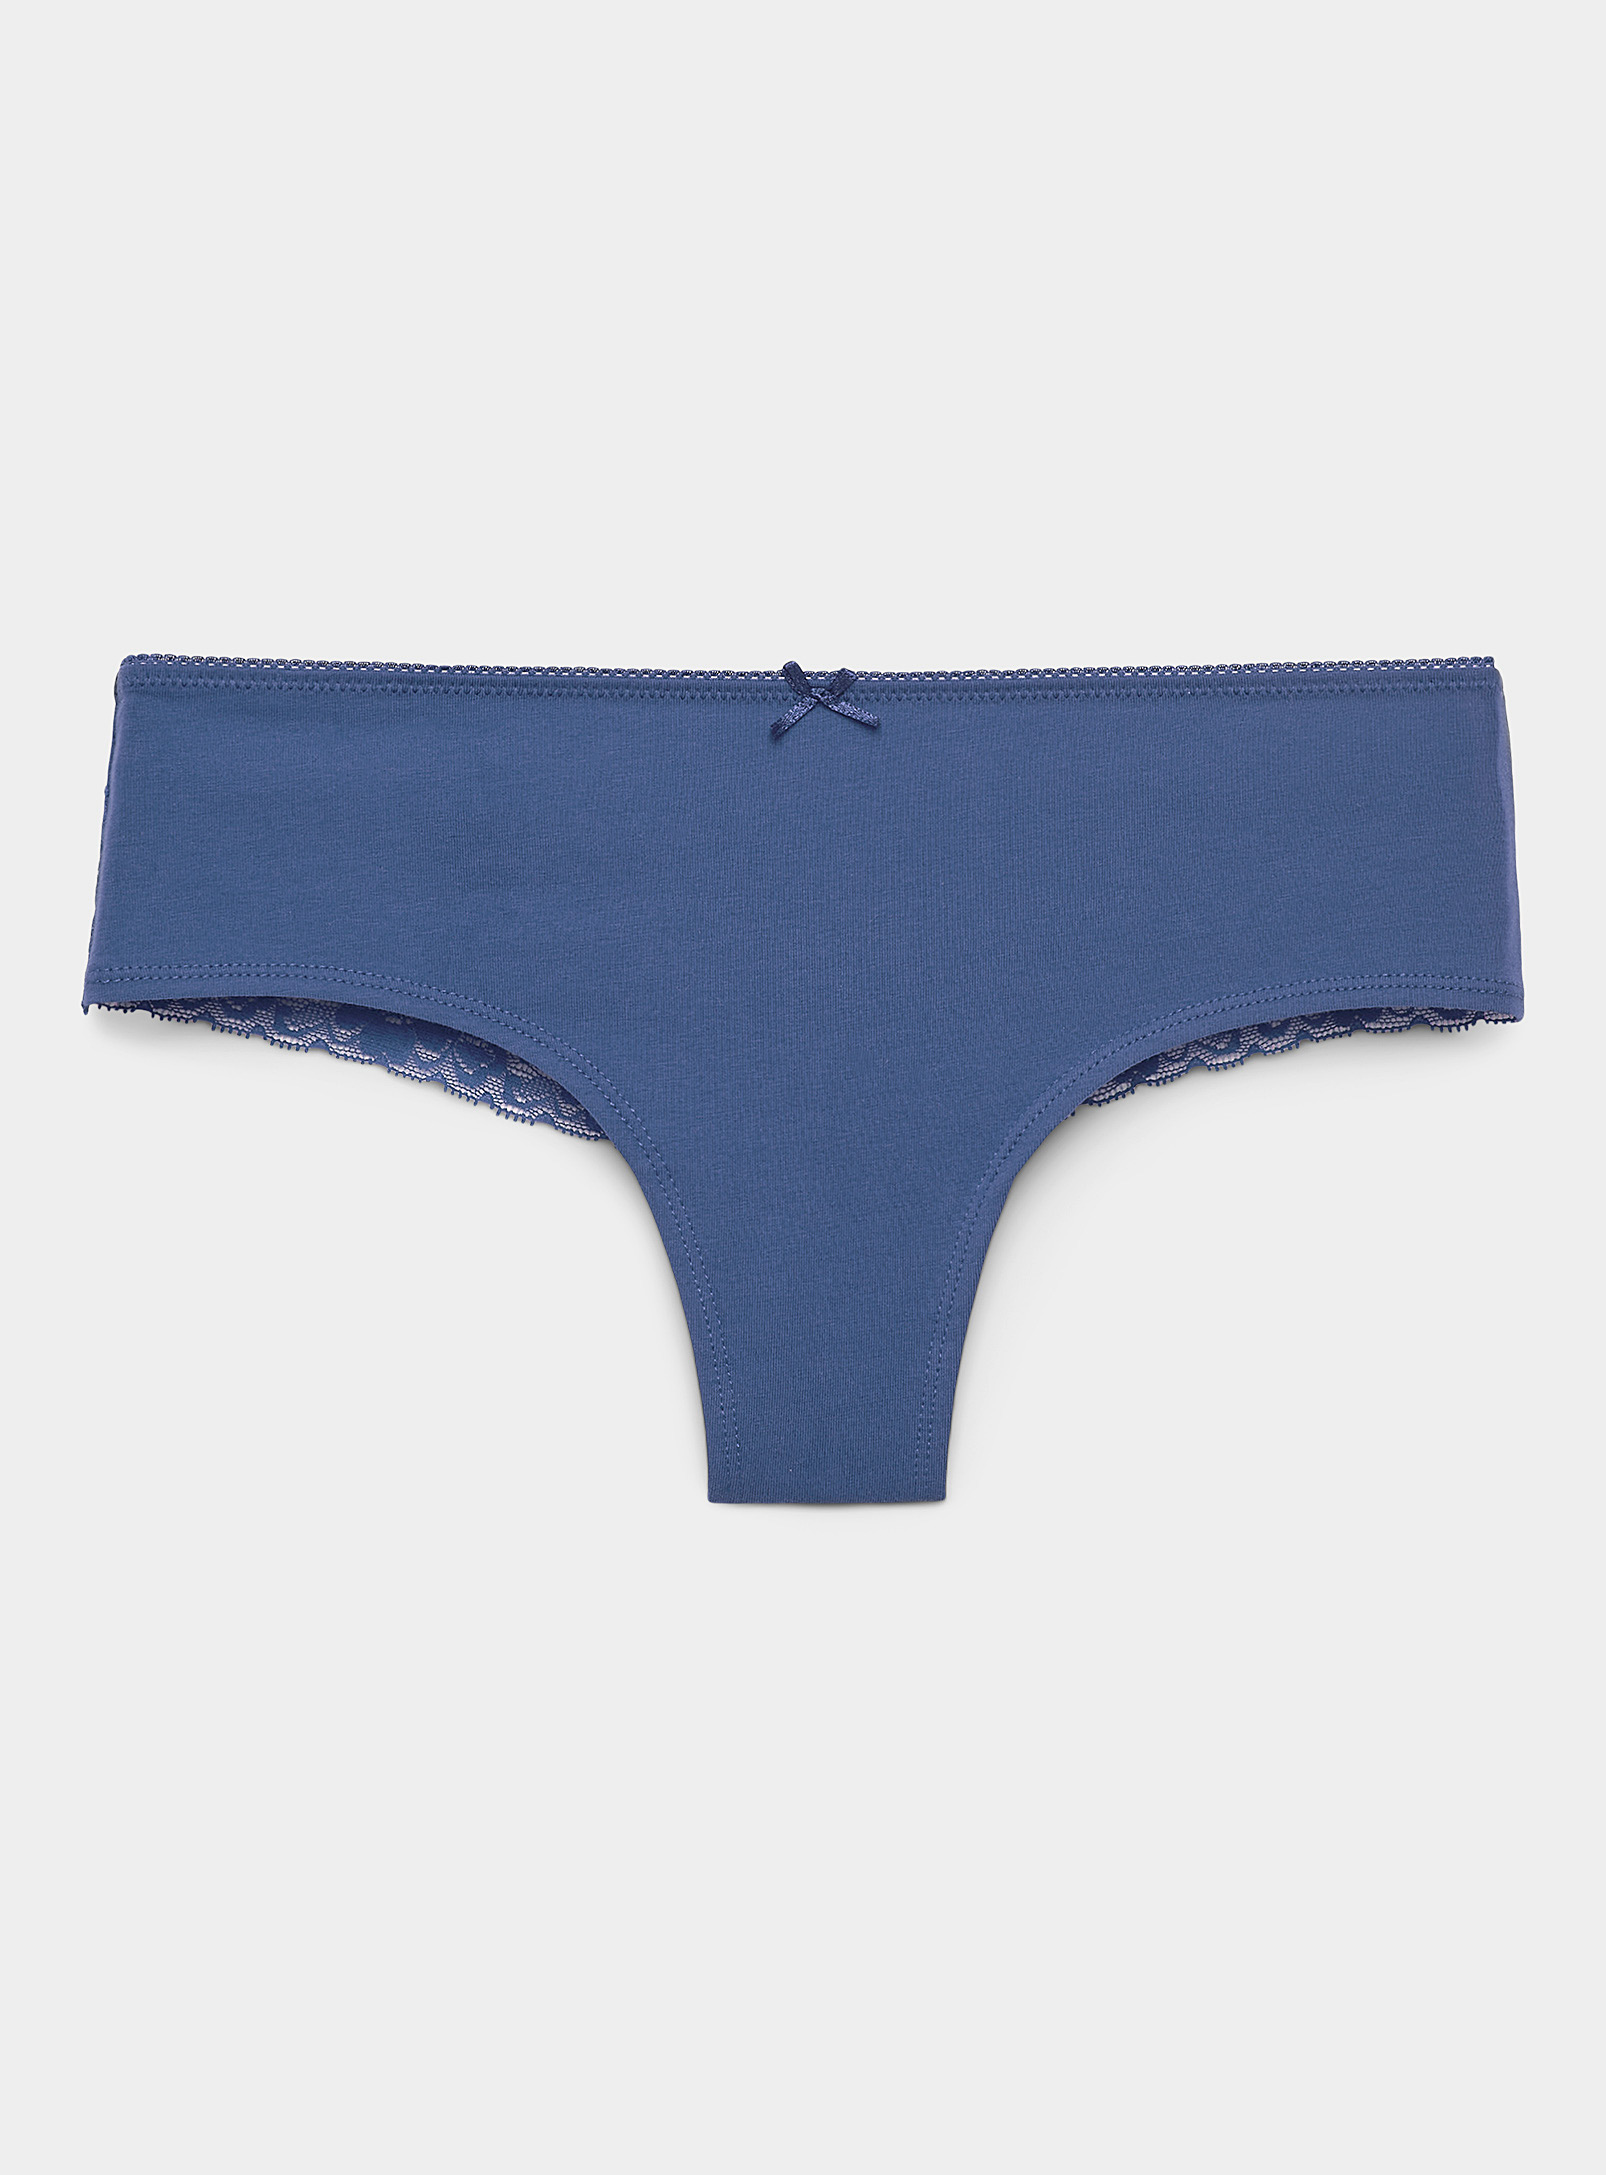 Miiyu Lace Band Cotton Brazilian Panty In Slate Blue